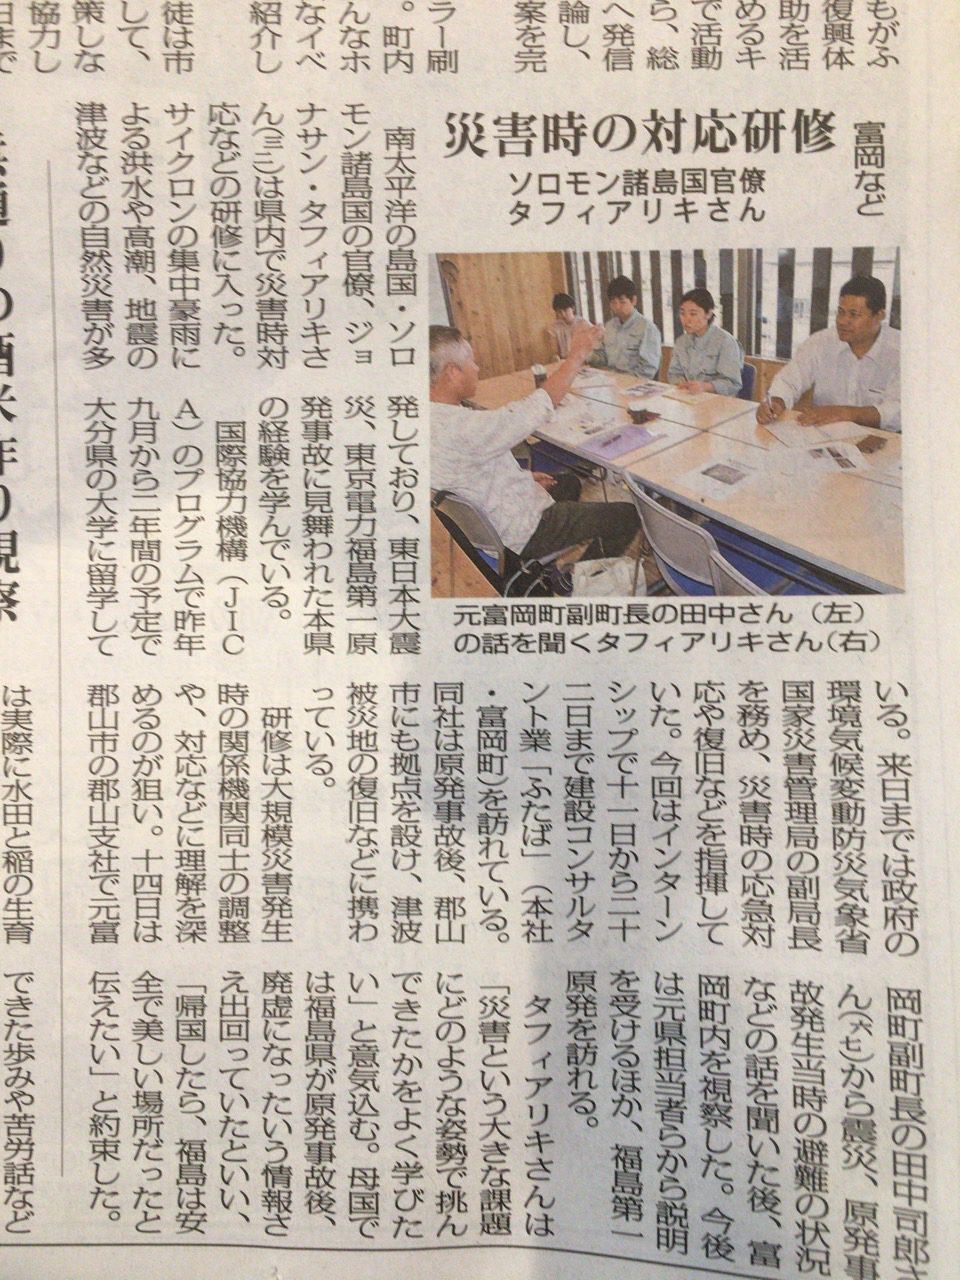 ソロモンからのインターンシップ生について福島民報（9月15日）で掲載の画像